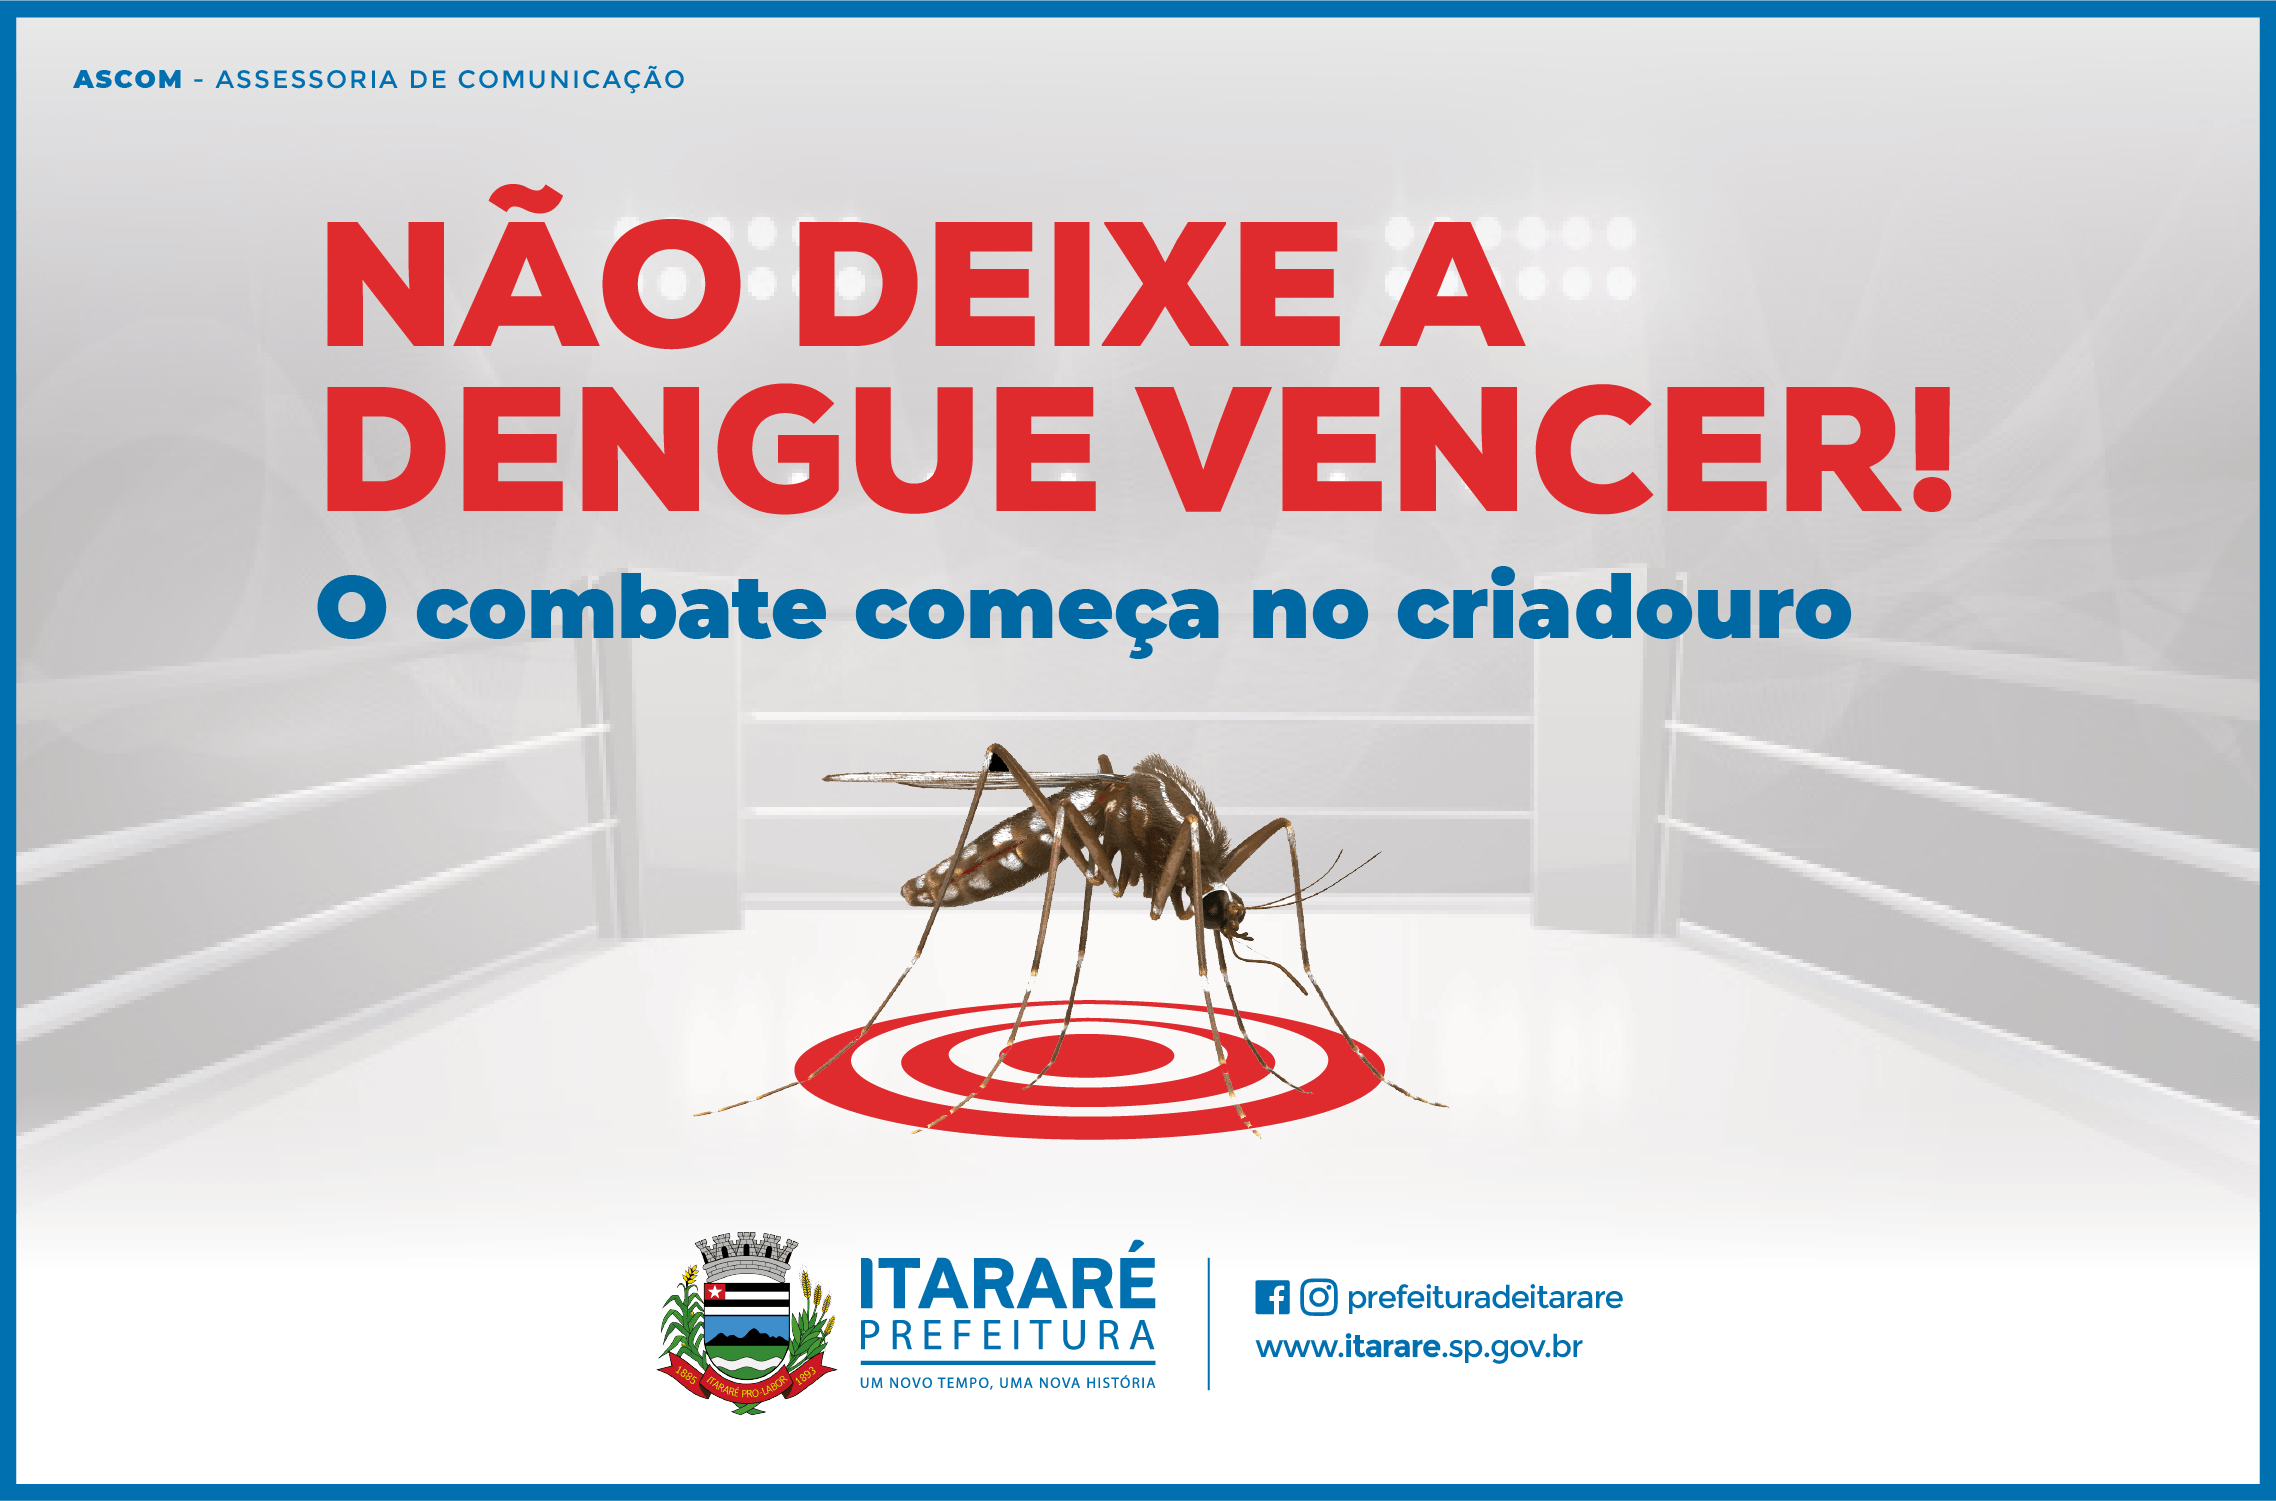 Dengue: Prefeitura de Itararé (SP) alerta sobre cuidados contra o mosquito Aedes Aegypti